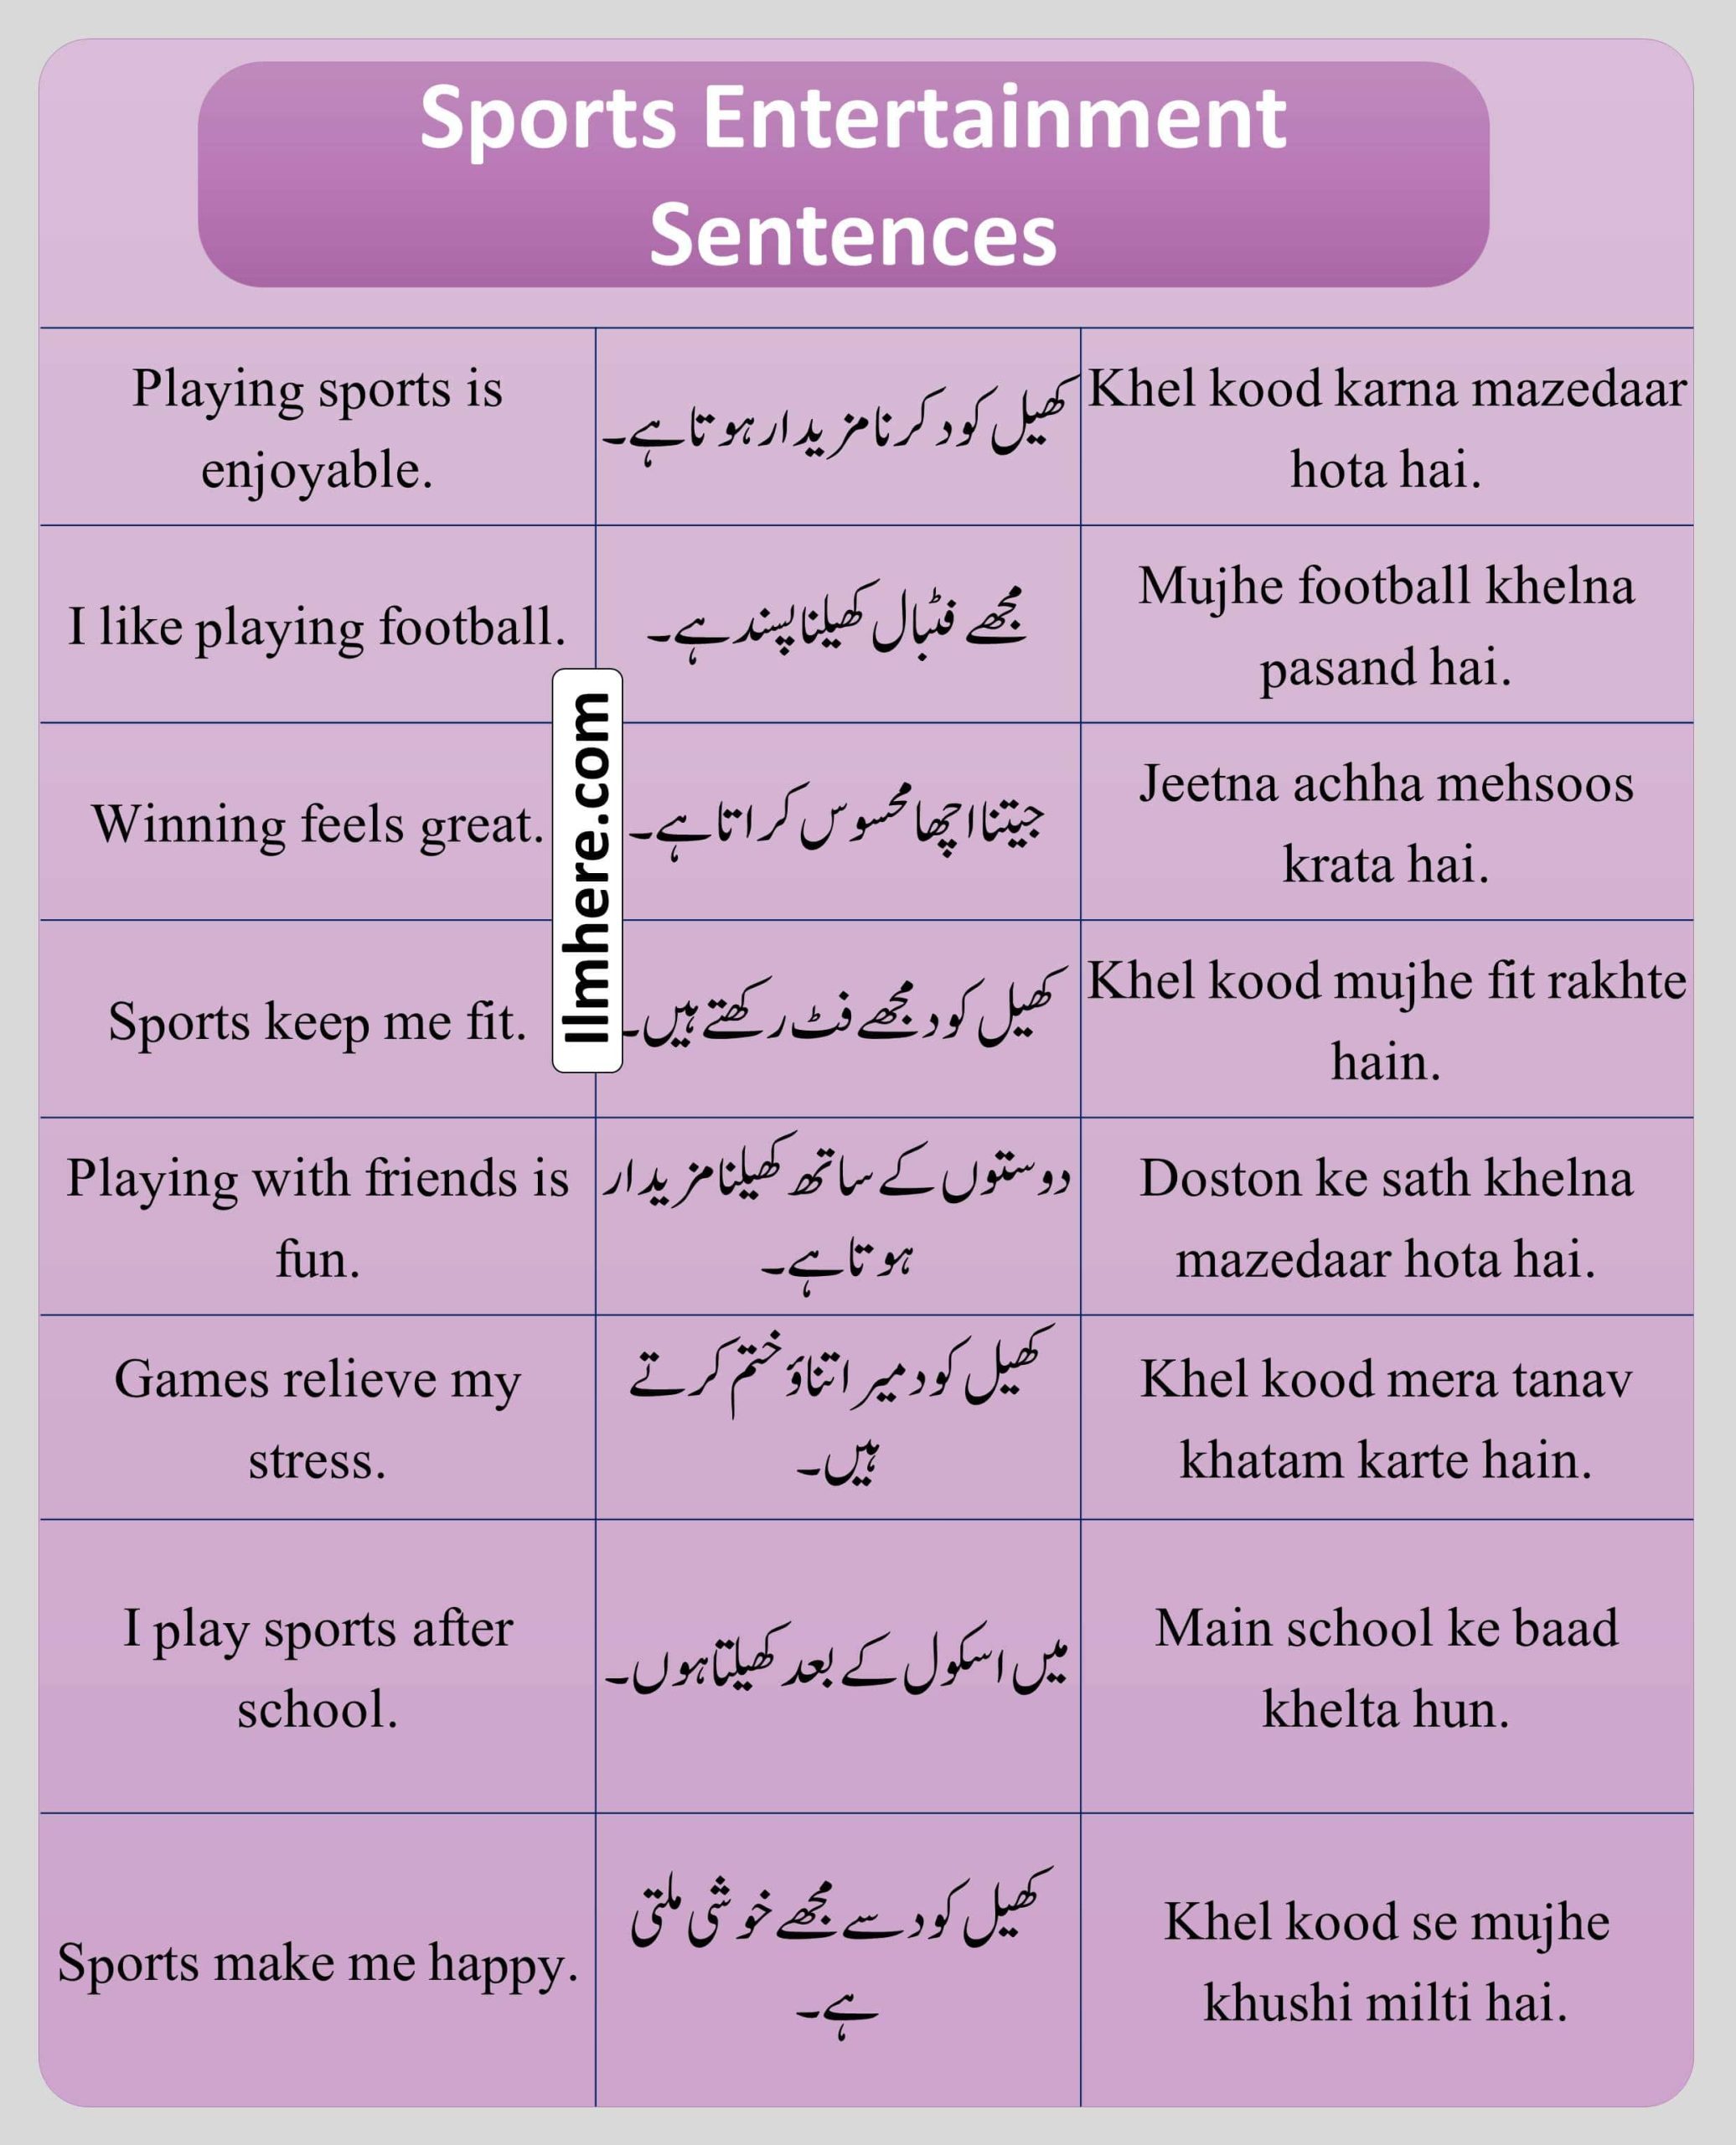 Sports Entertainment Sentences